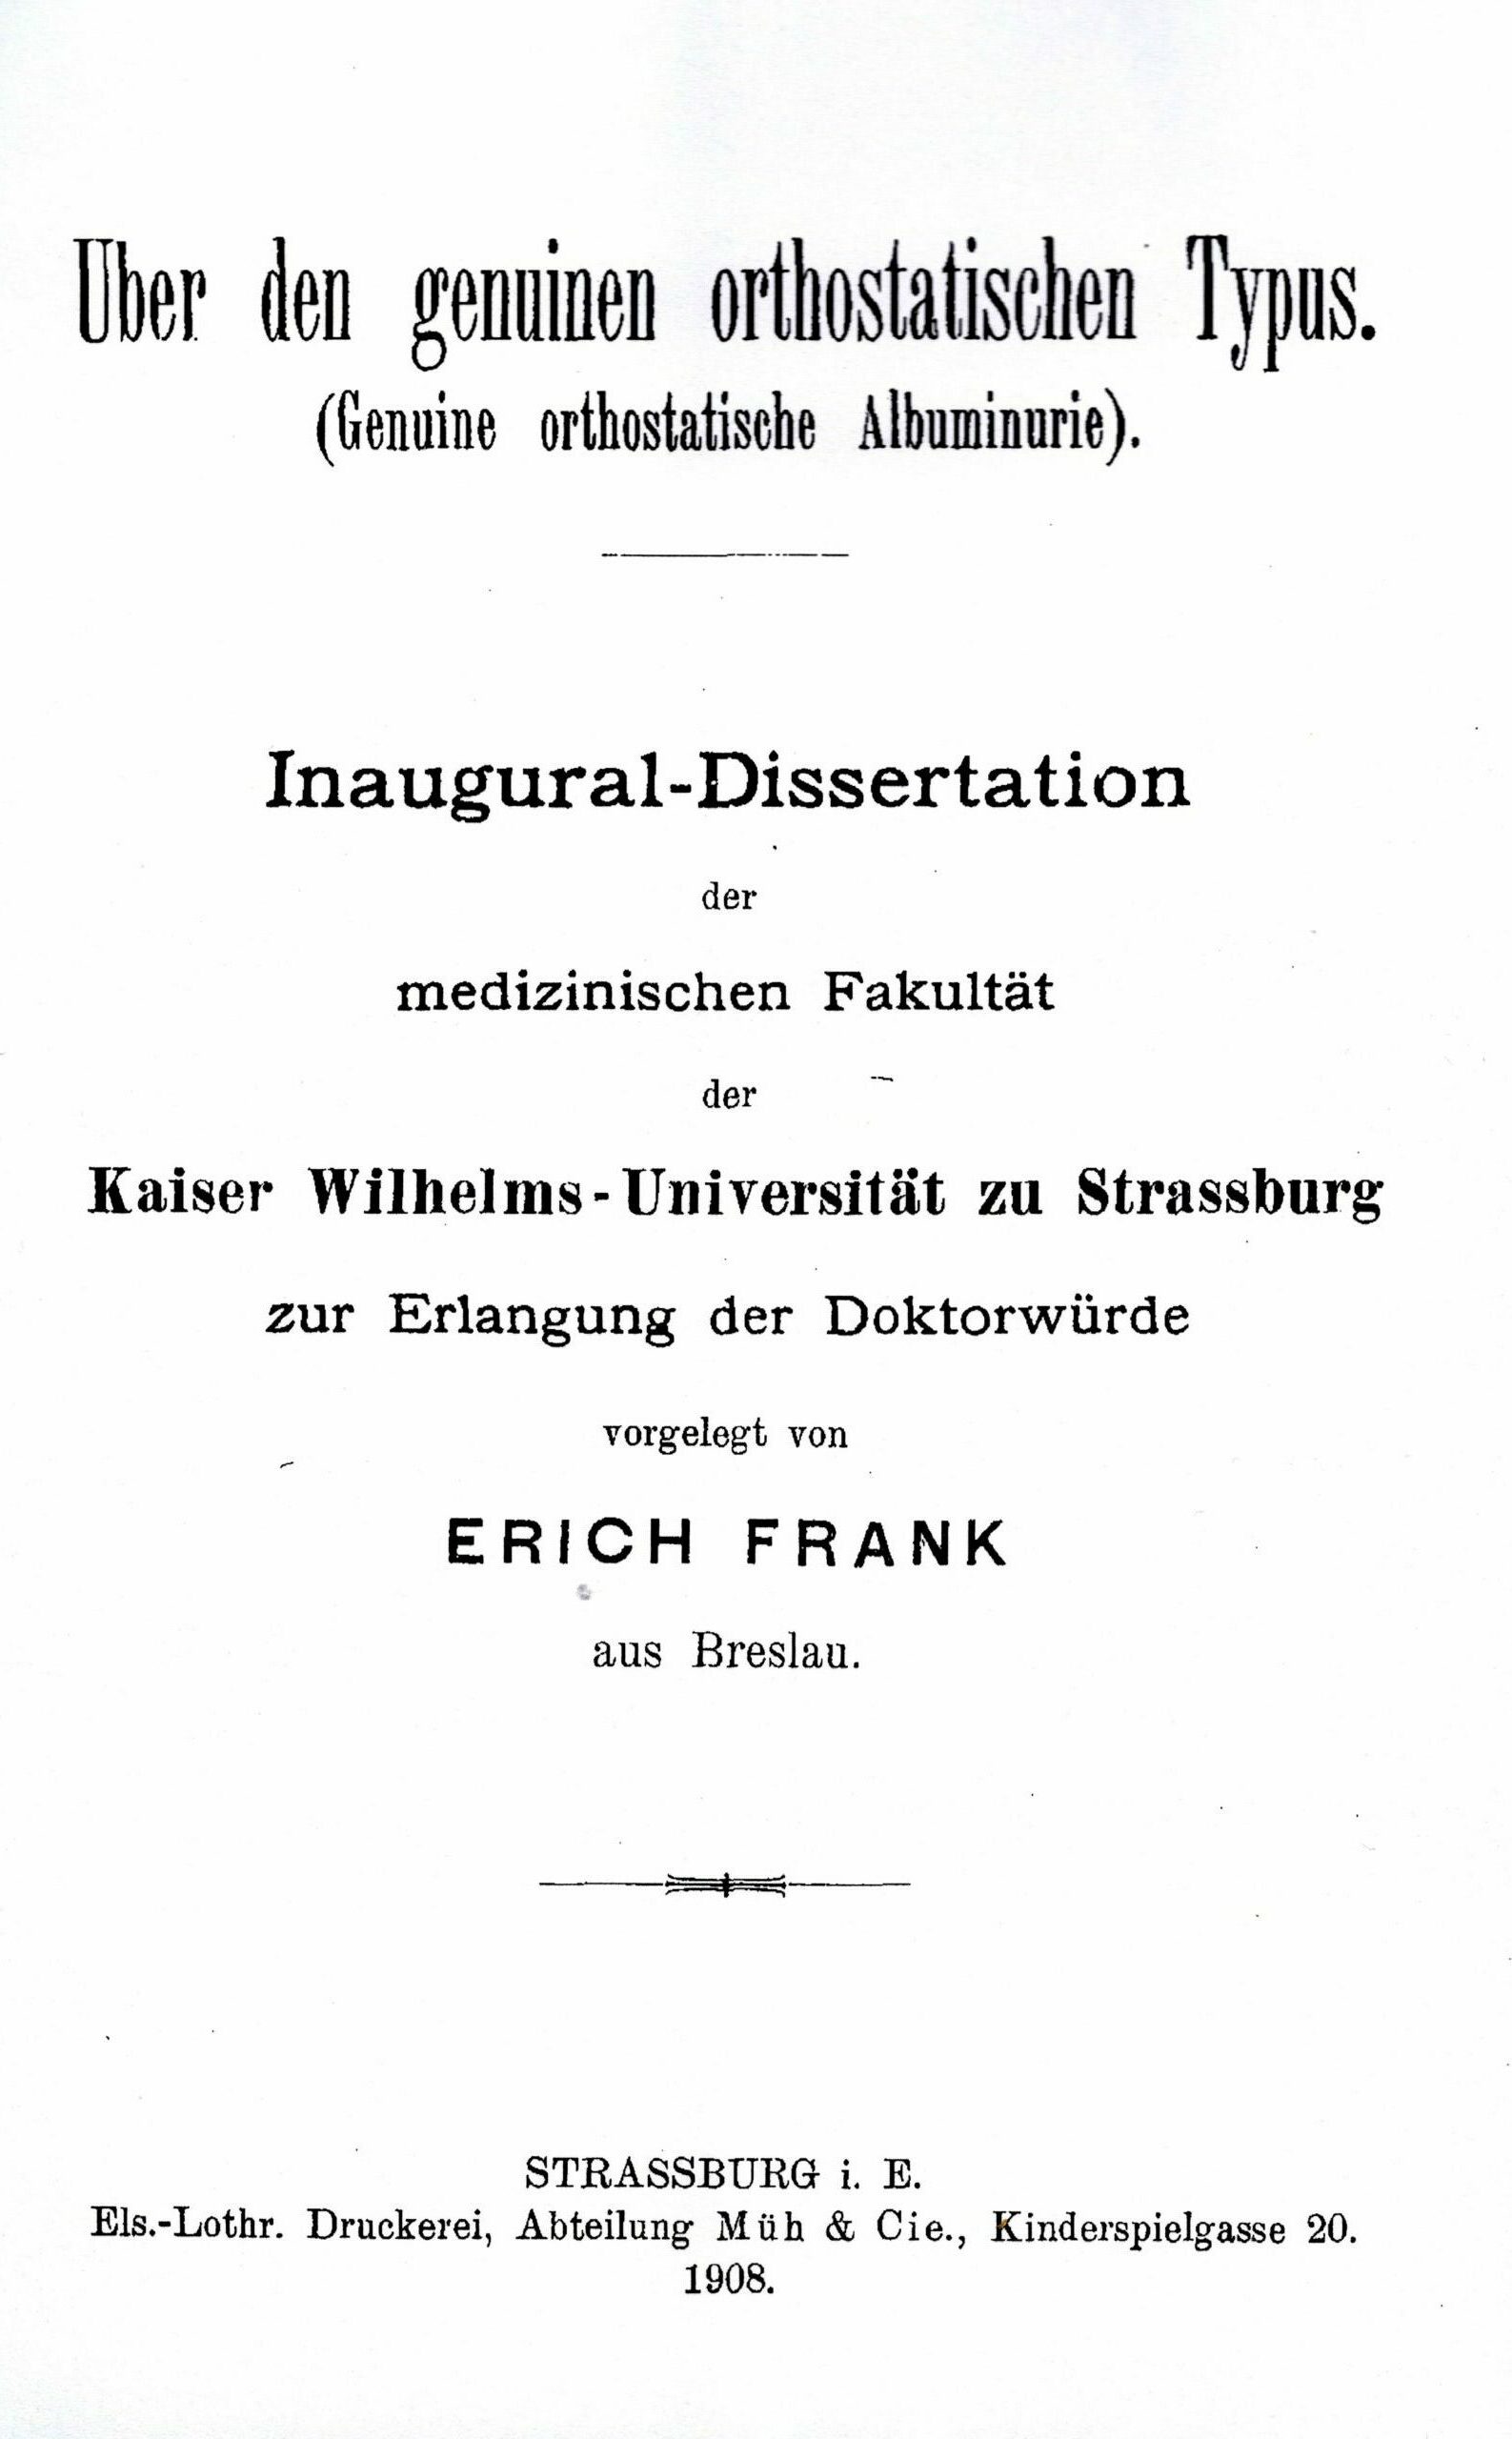 Dissertation, Straßburg 1908